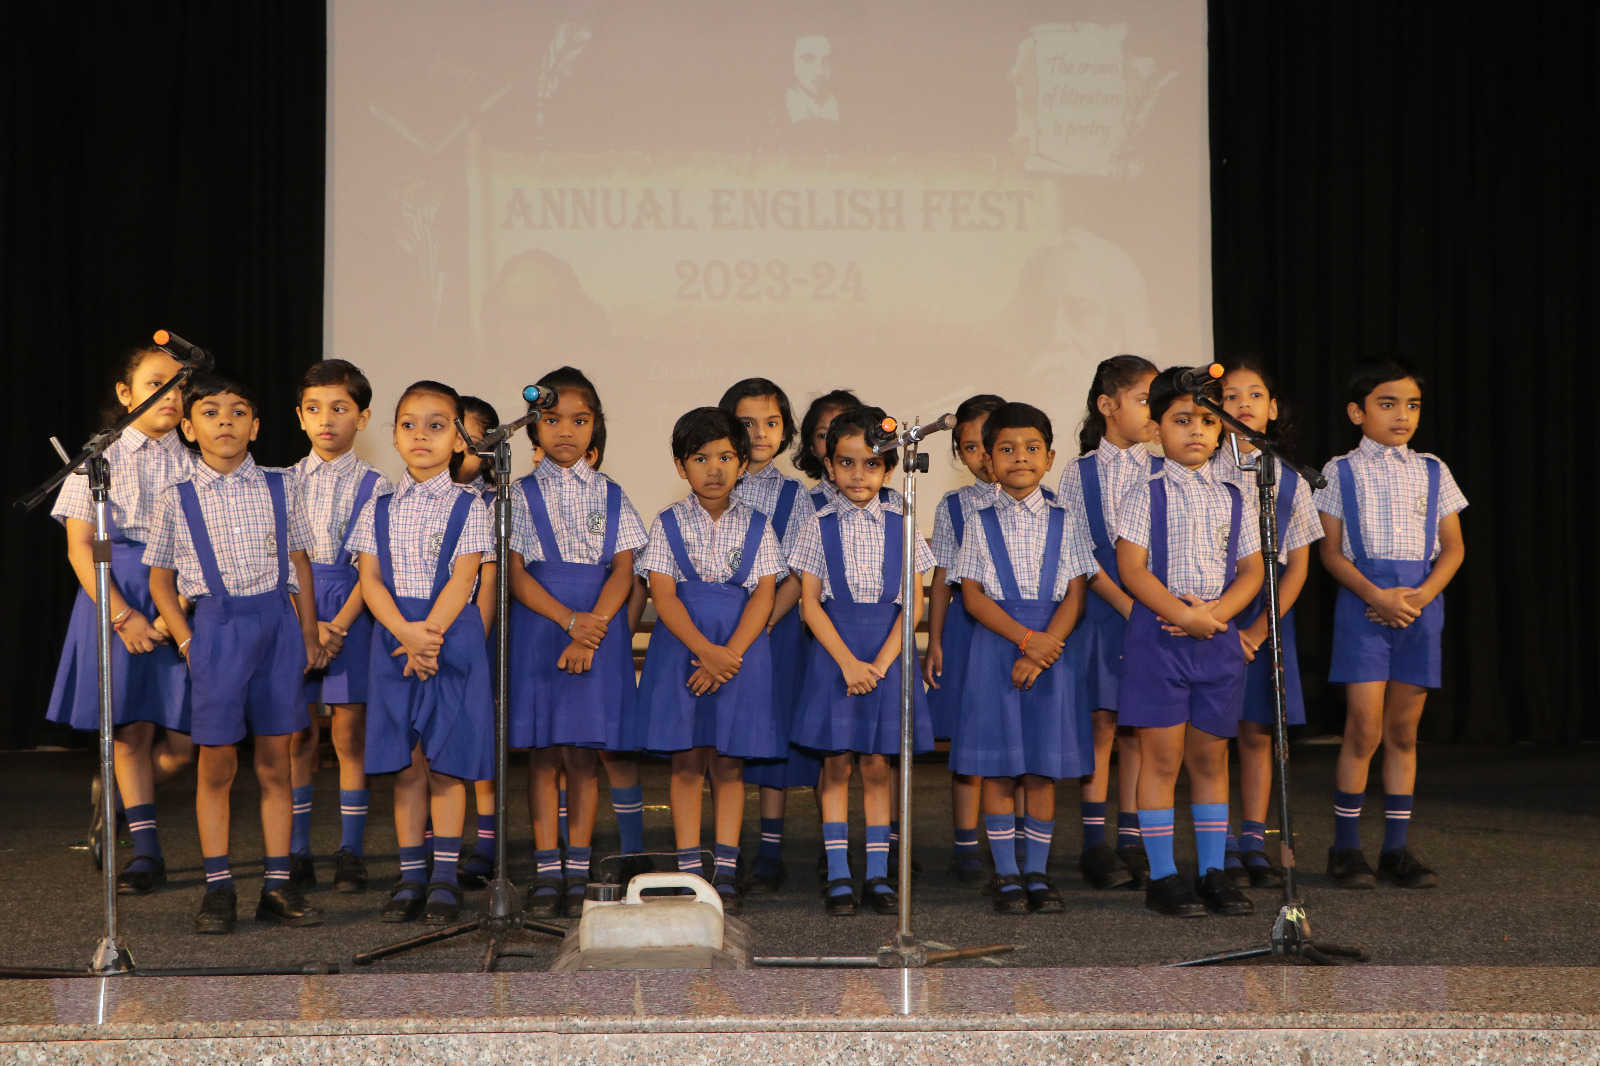 Annual English Fest Pre-Primary 2023